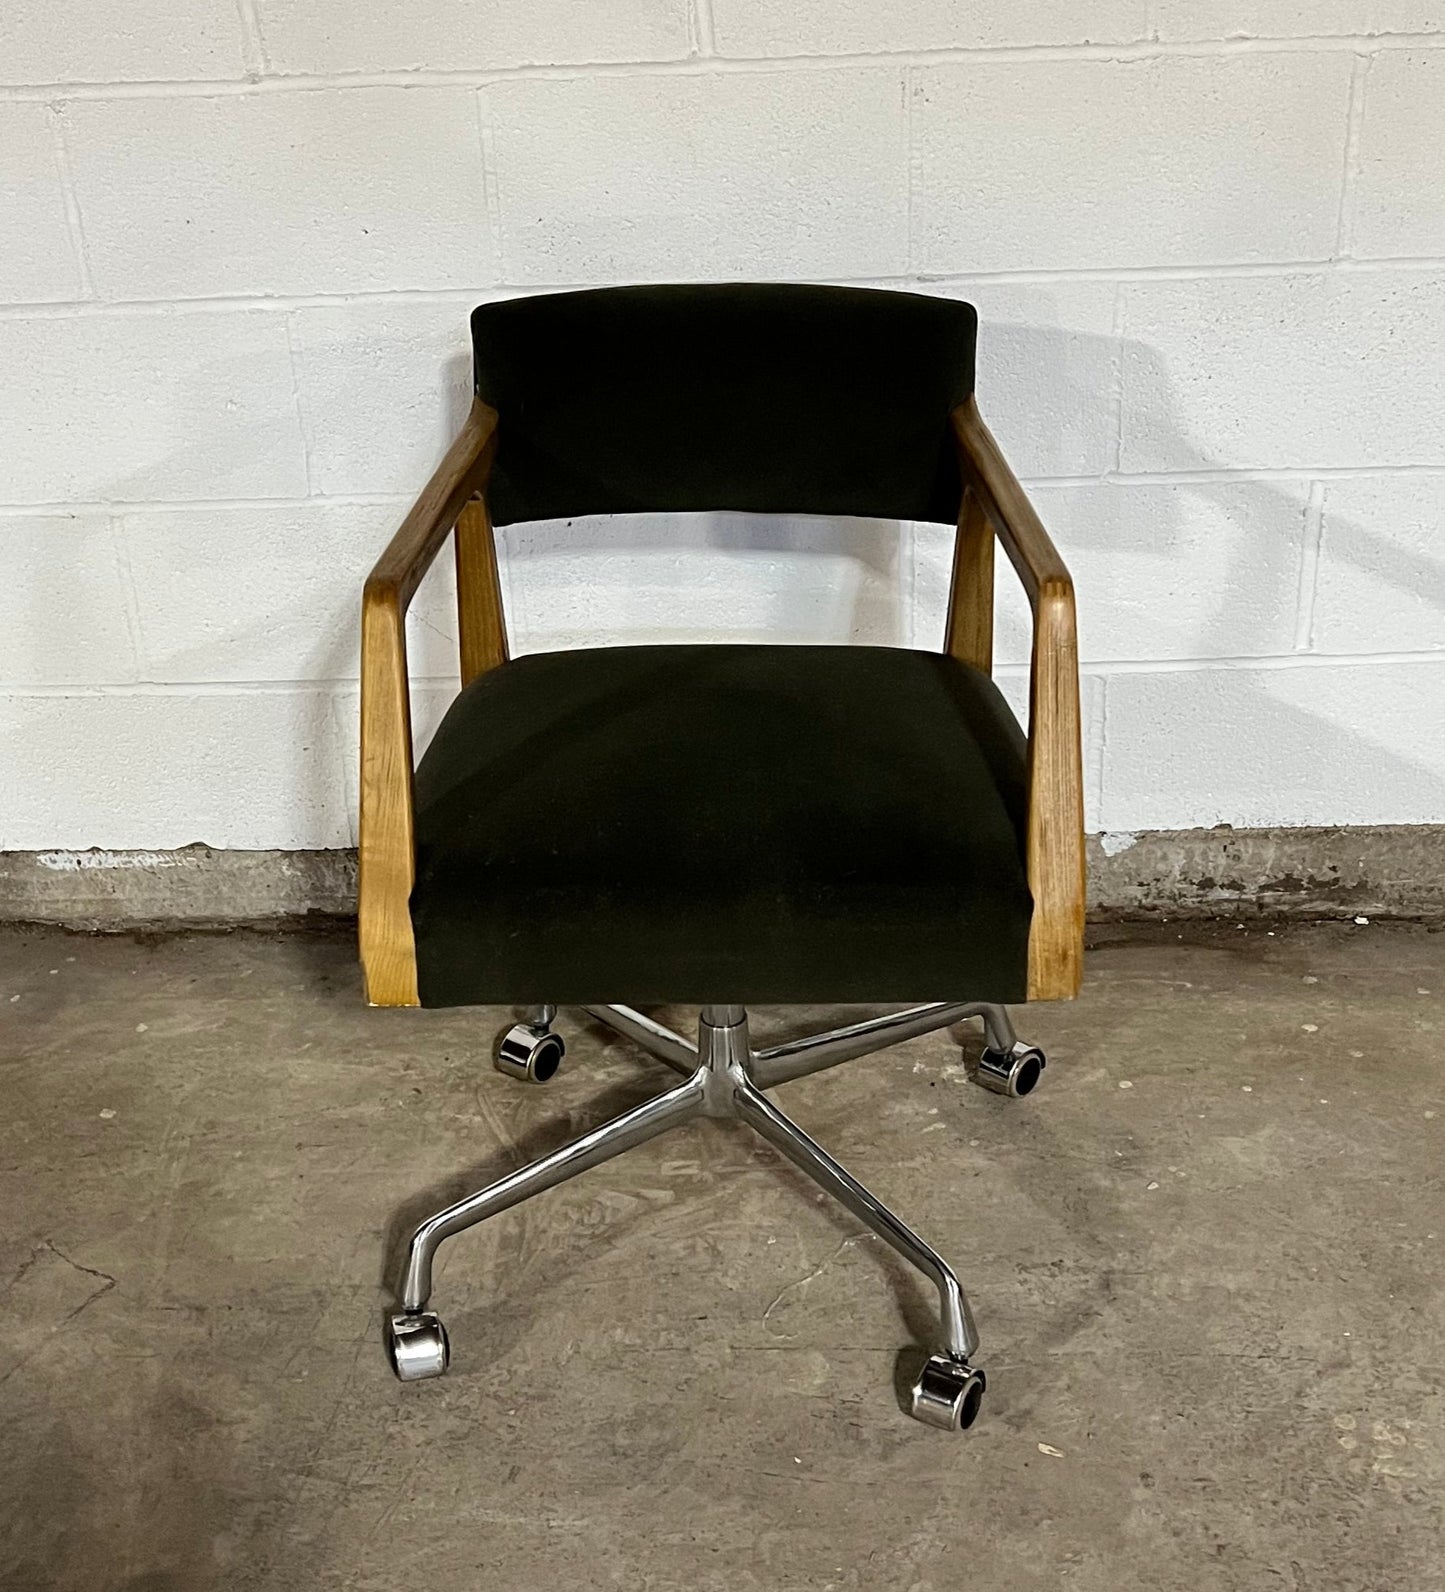 Four Hands Tyler Desk Chair - Velvet Loden HOP104-416